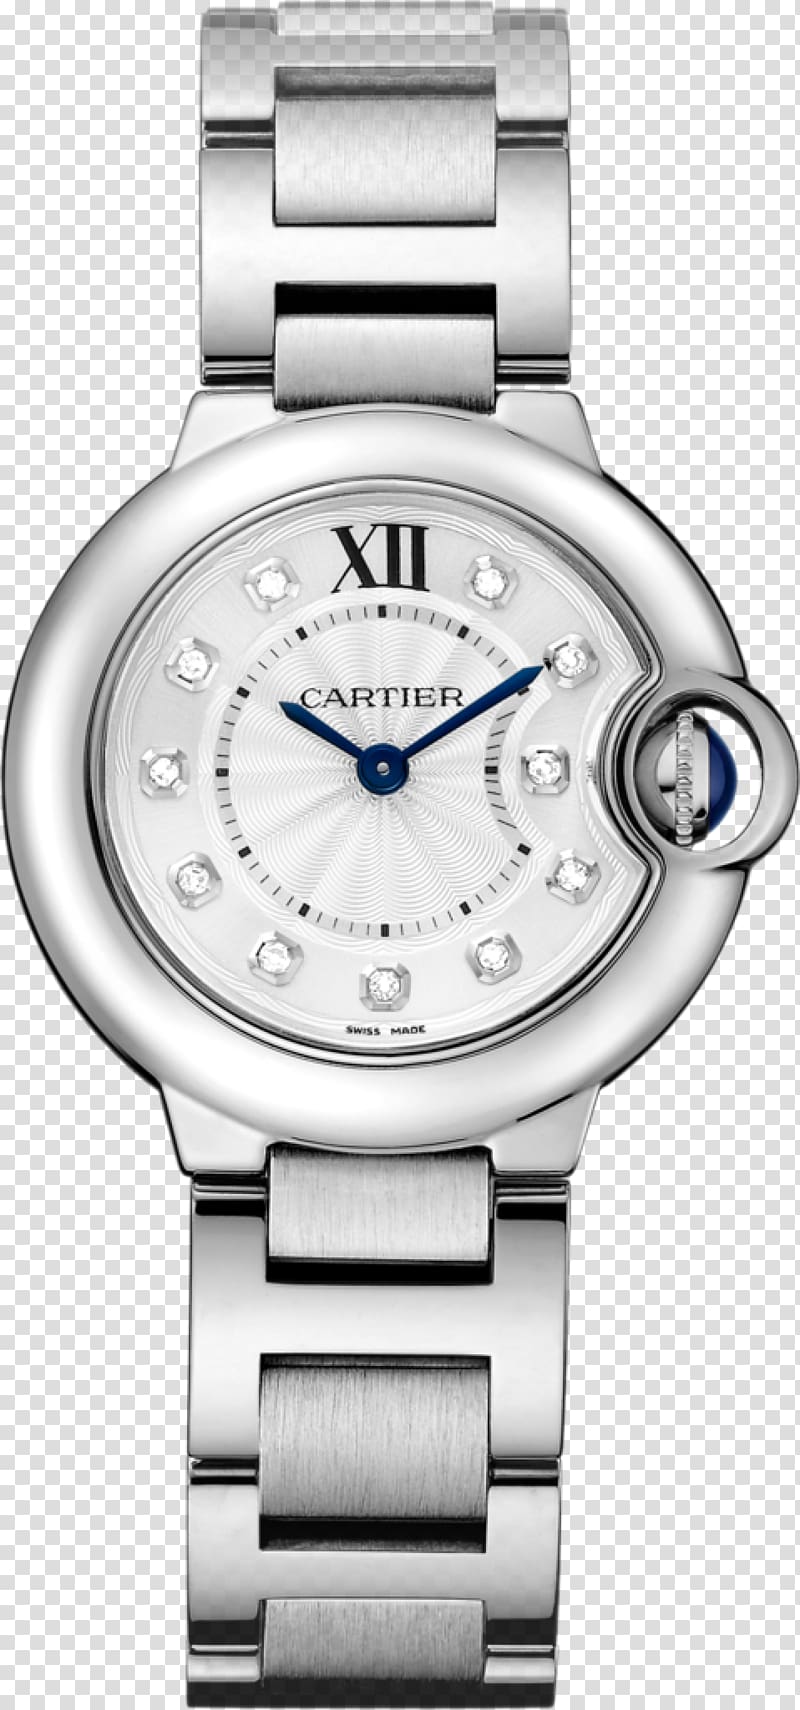 Cartier Ballon Bleu Watch Jewellery Cabochon, watch transparent background PNG clipart